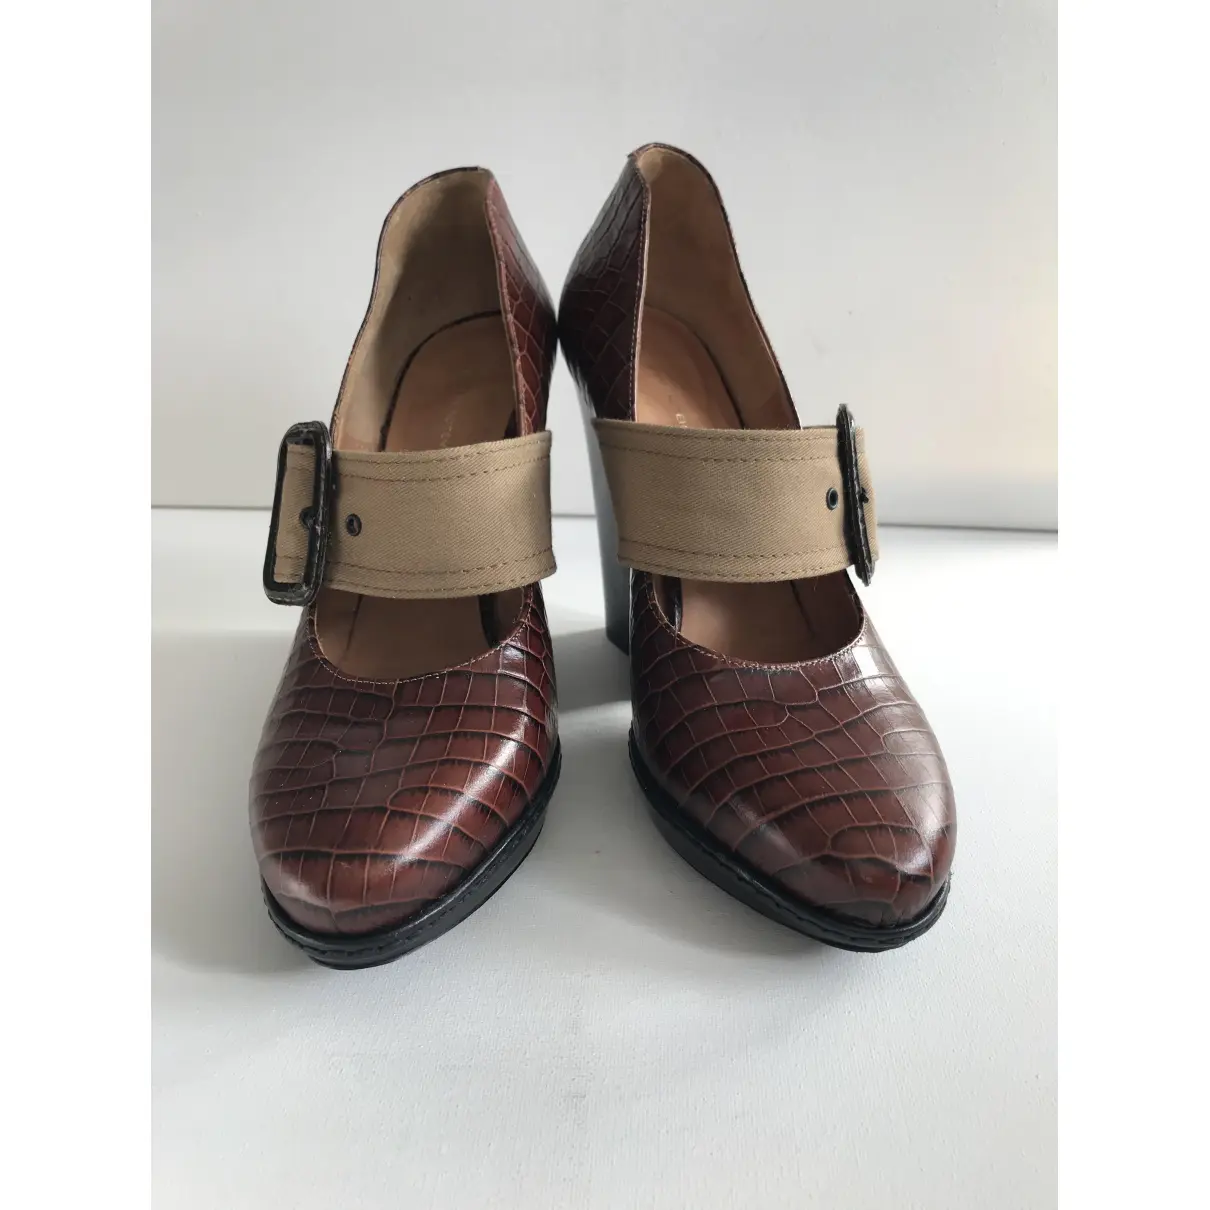 Buy Dries Van Noten Leather heels online